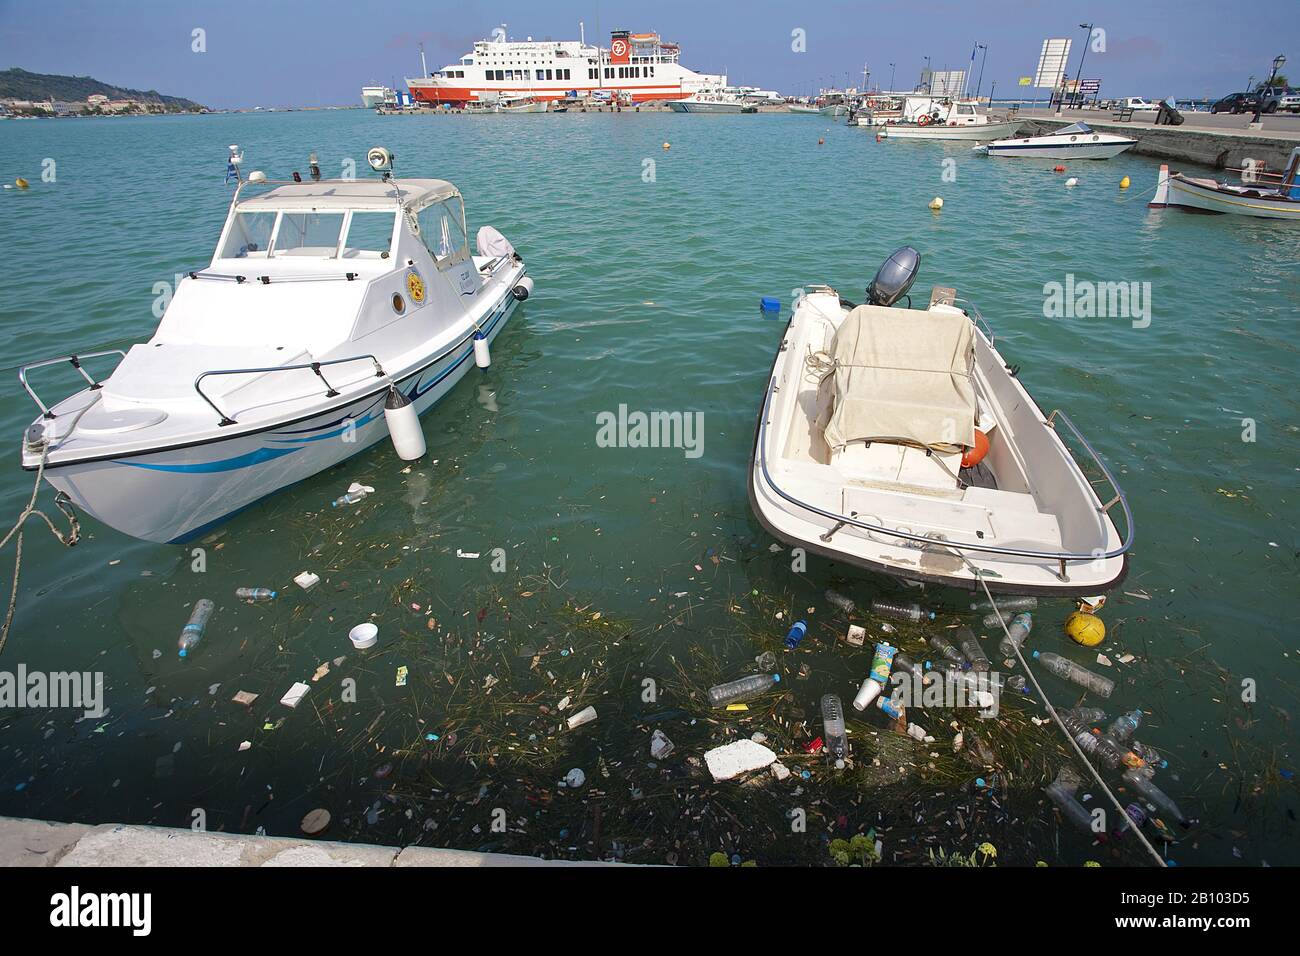 La basura de la civilización flota en el puerto de la ciudad de Zakynthos, isla de Zakynthos, Grecia Foto de stock